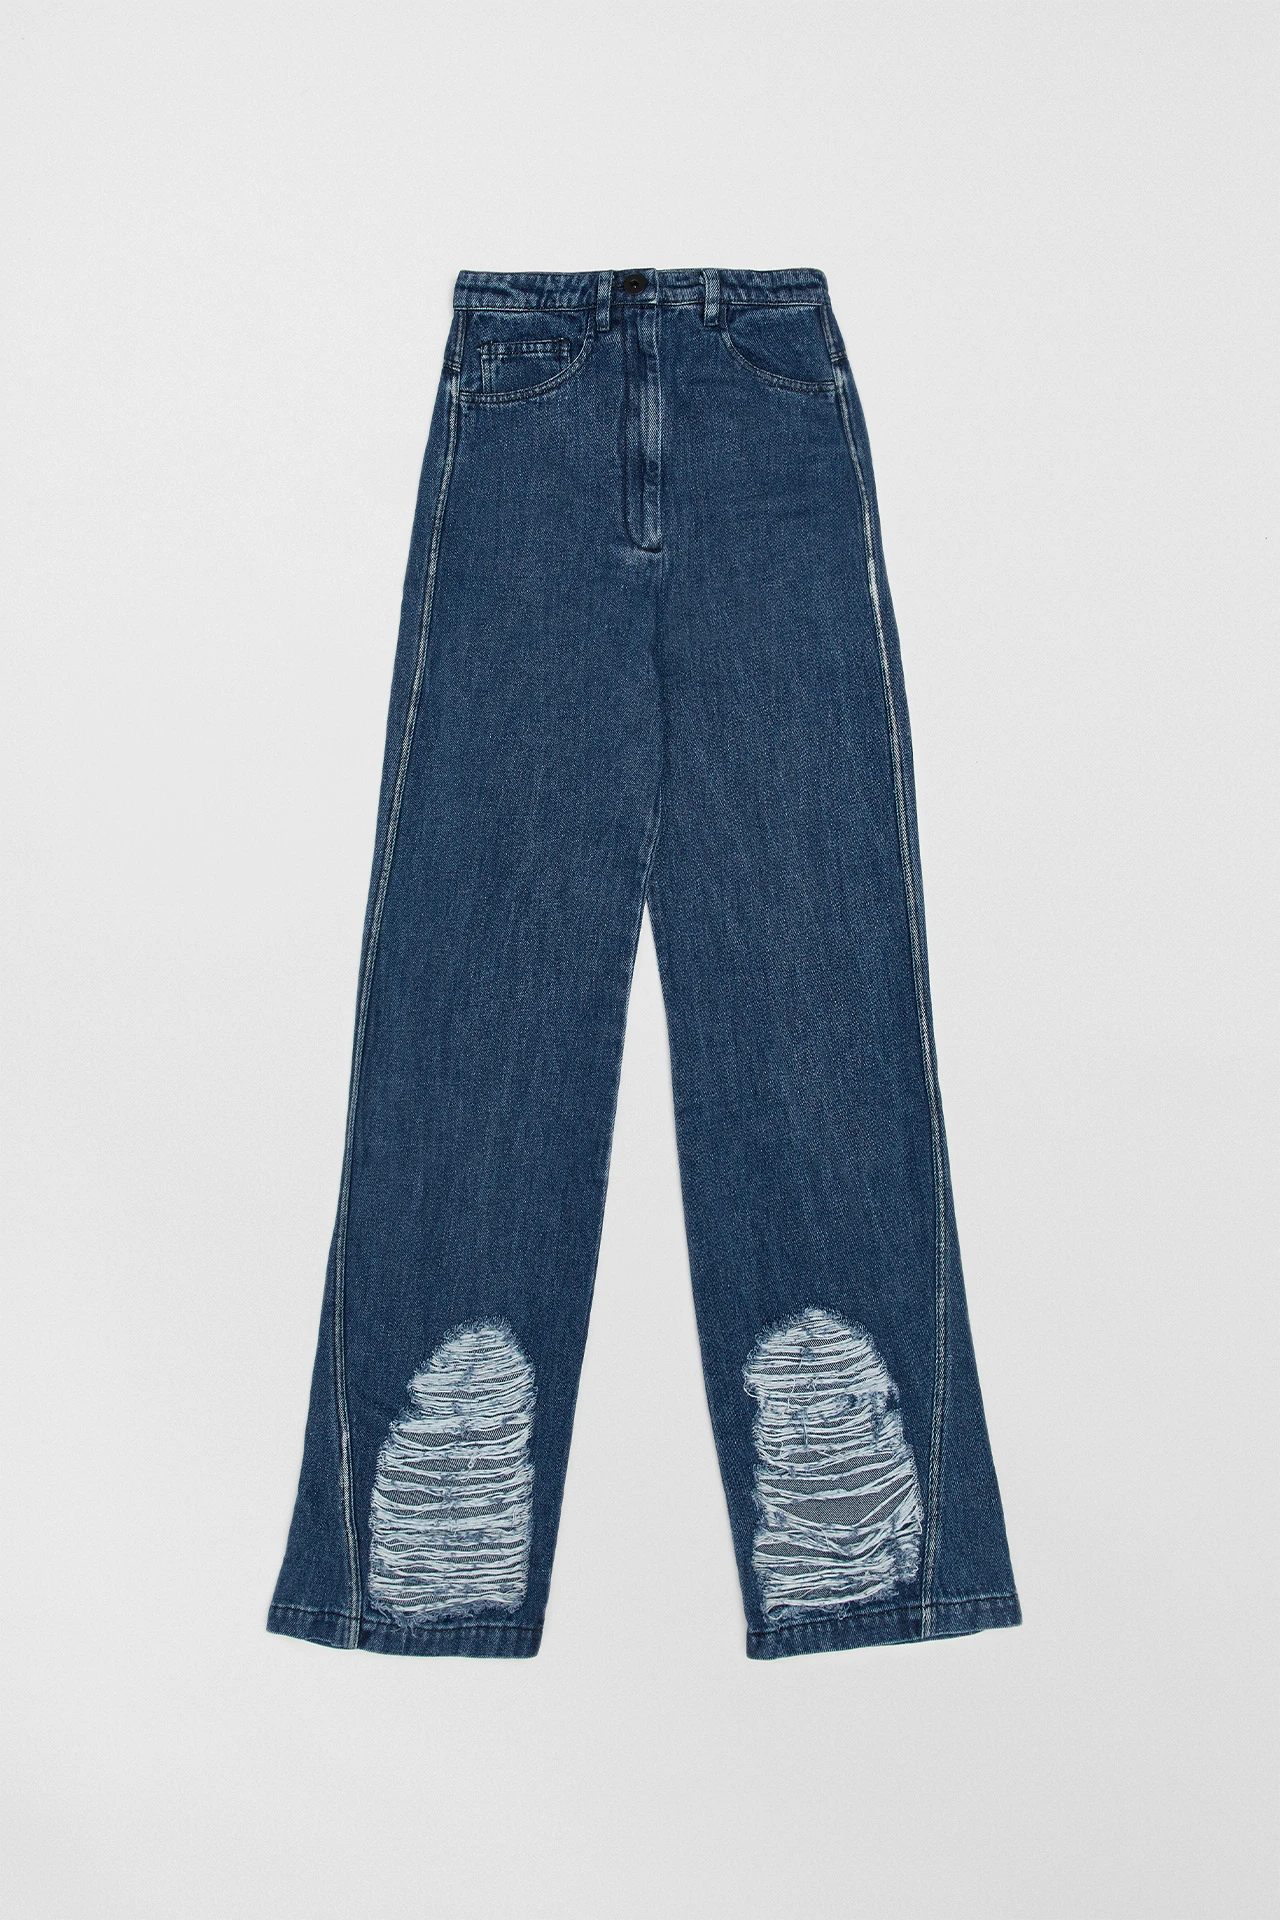 Miista-jona-blue-jeans-01